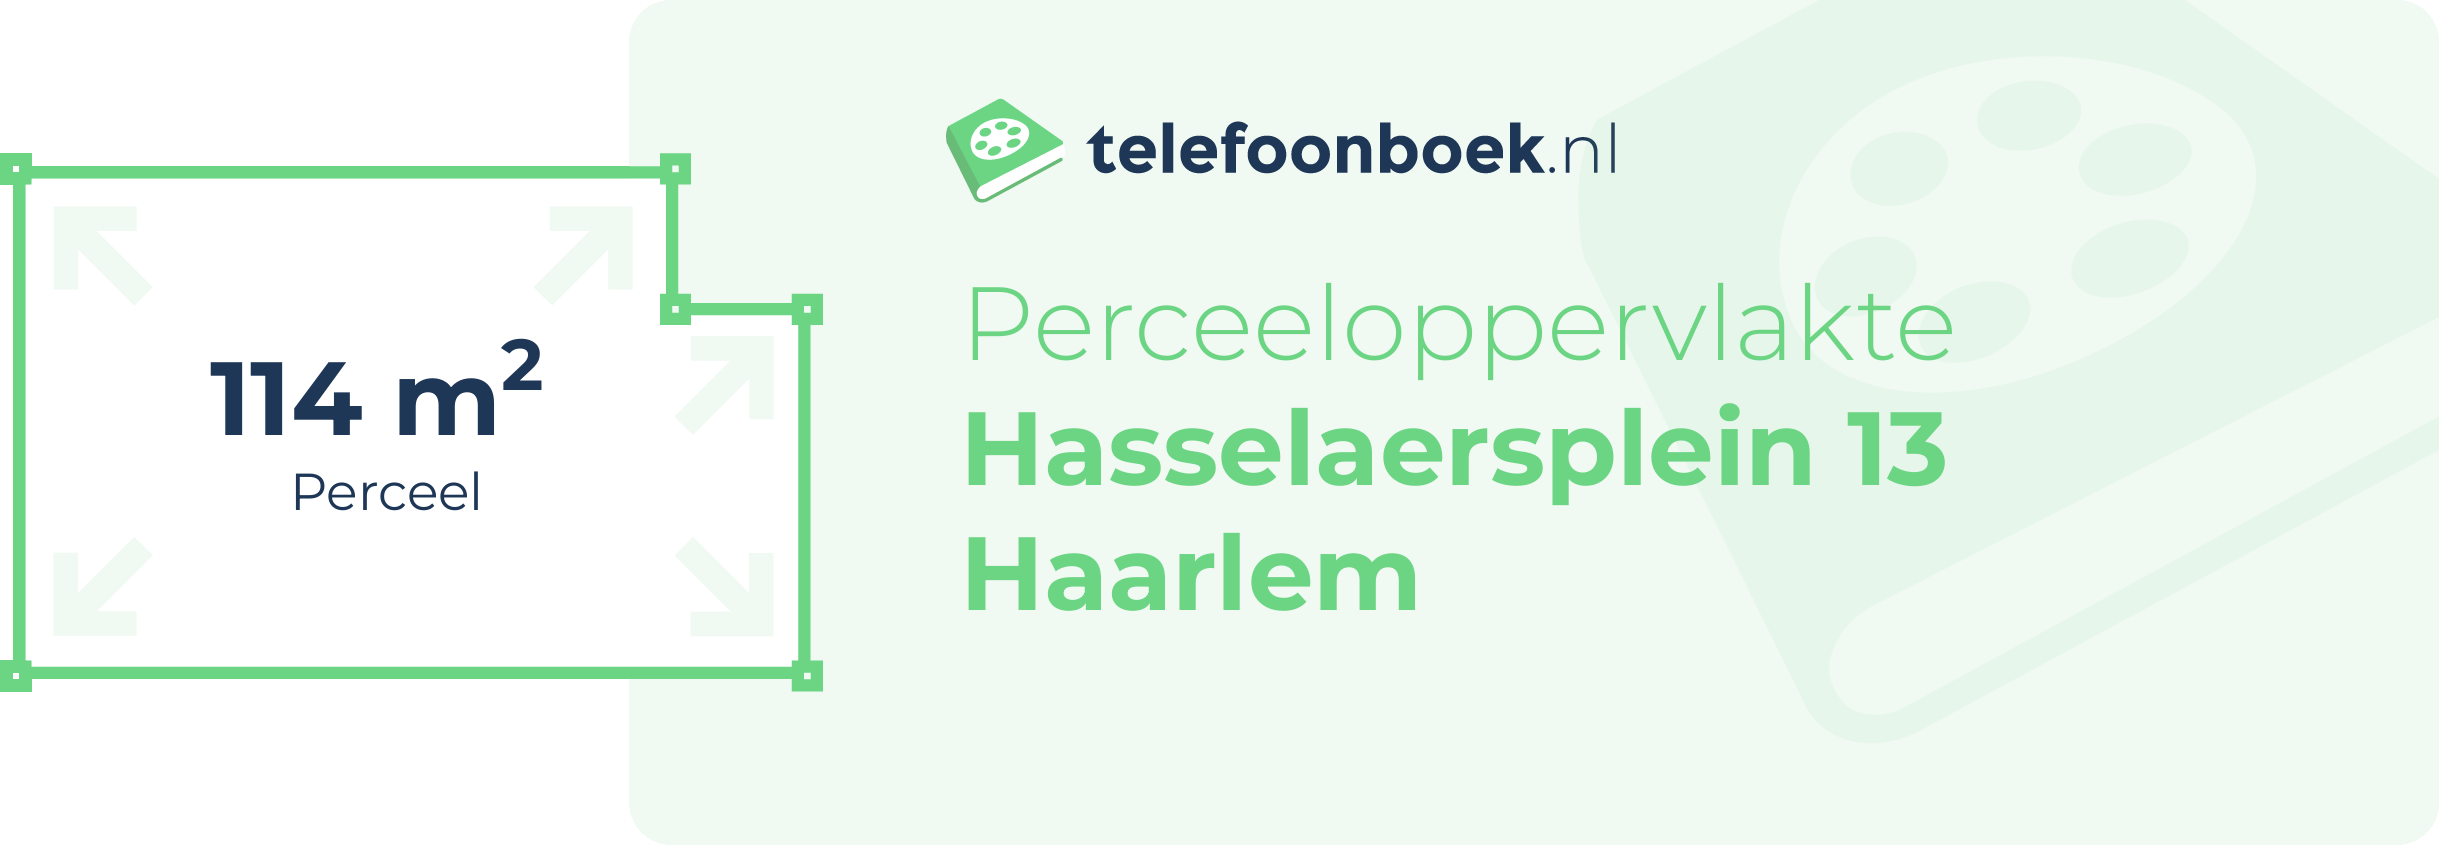 Perceeloppervlakte Hasselaersplein 13 Haarlem